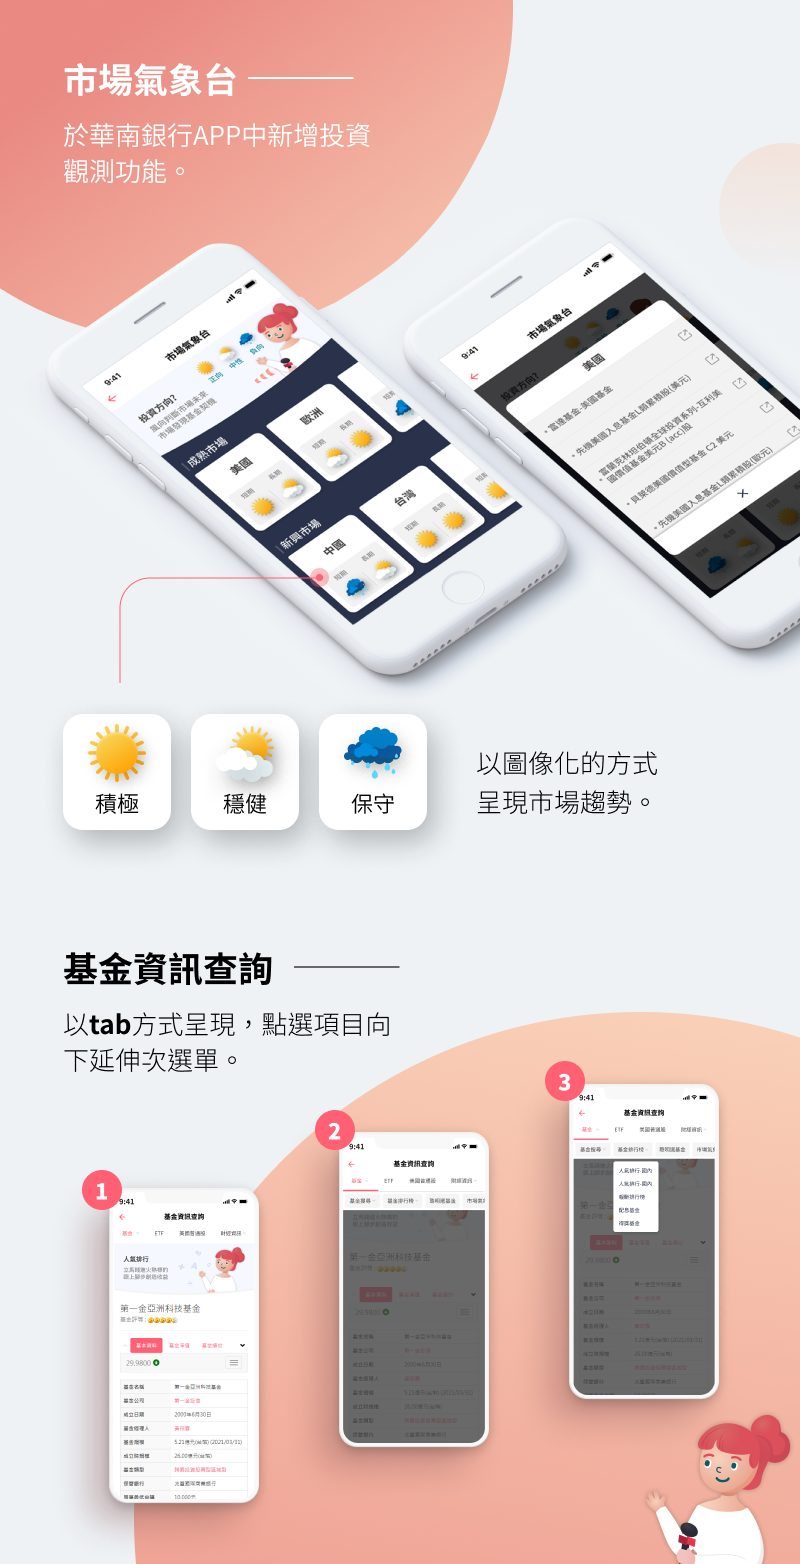 華南銀行 市場氣象台 APP設計 UI設計 行動裝置介面